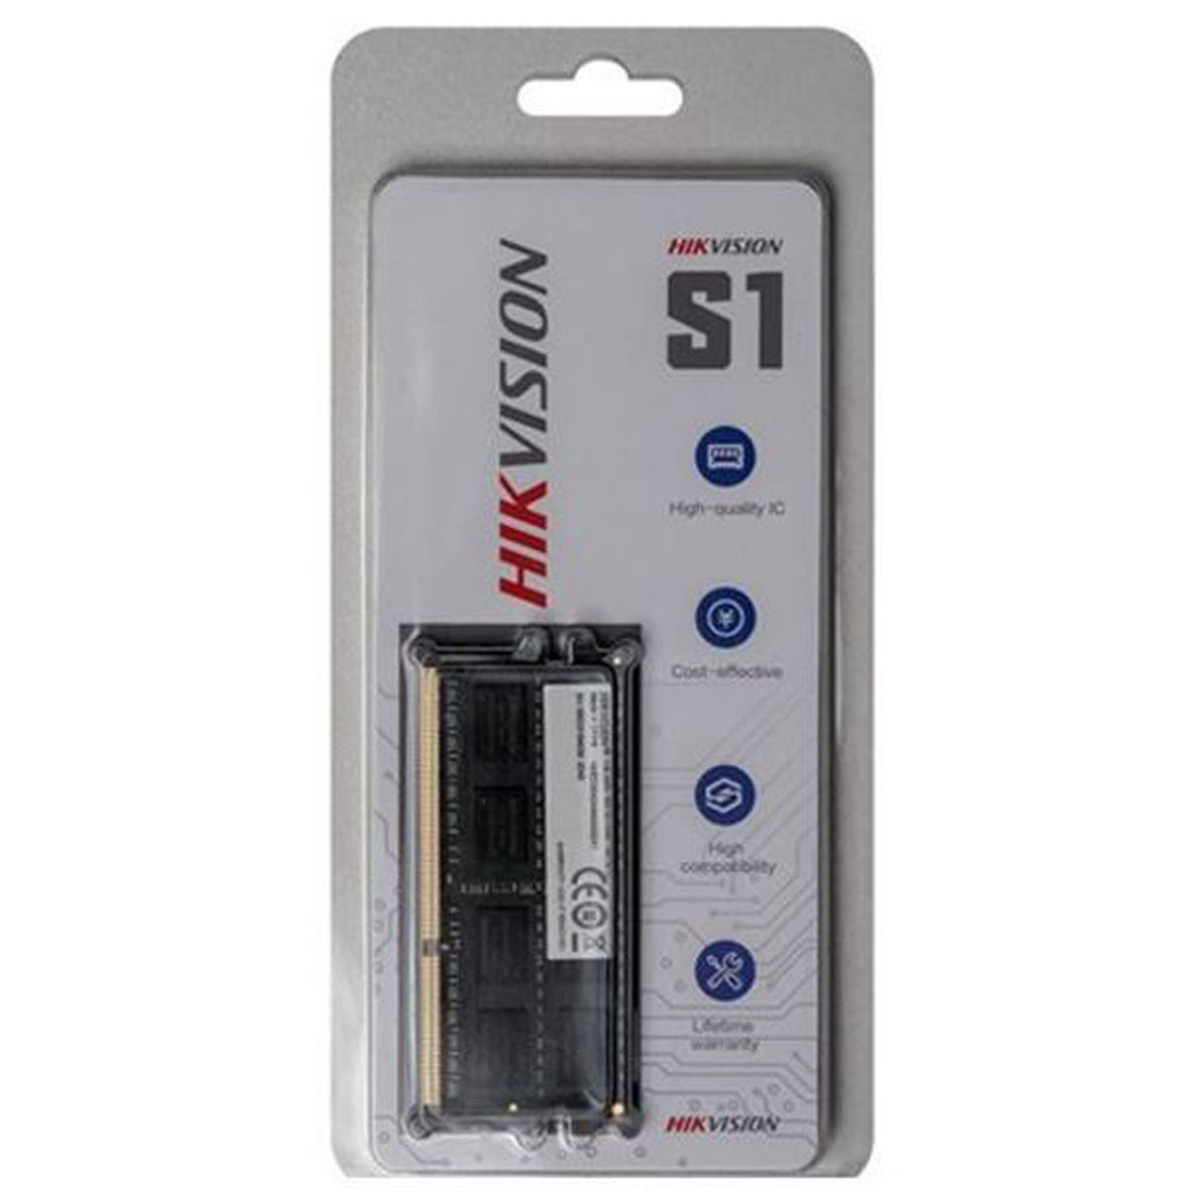 MEMORIA RAM HIKVISION 8GB DDR4 3200MHZ SODIMM